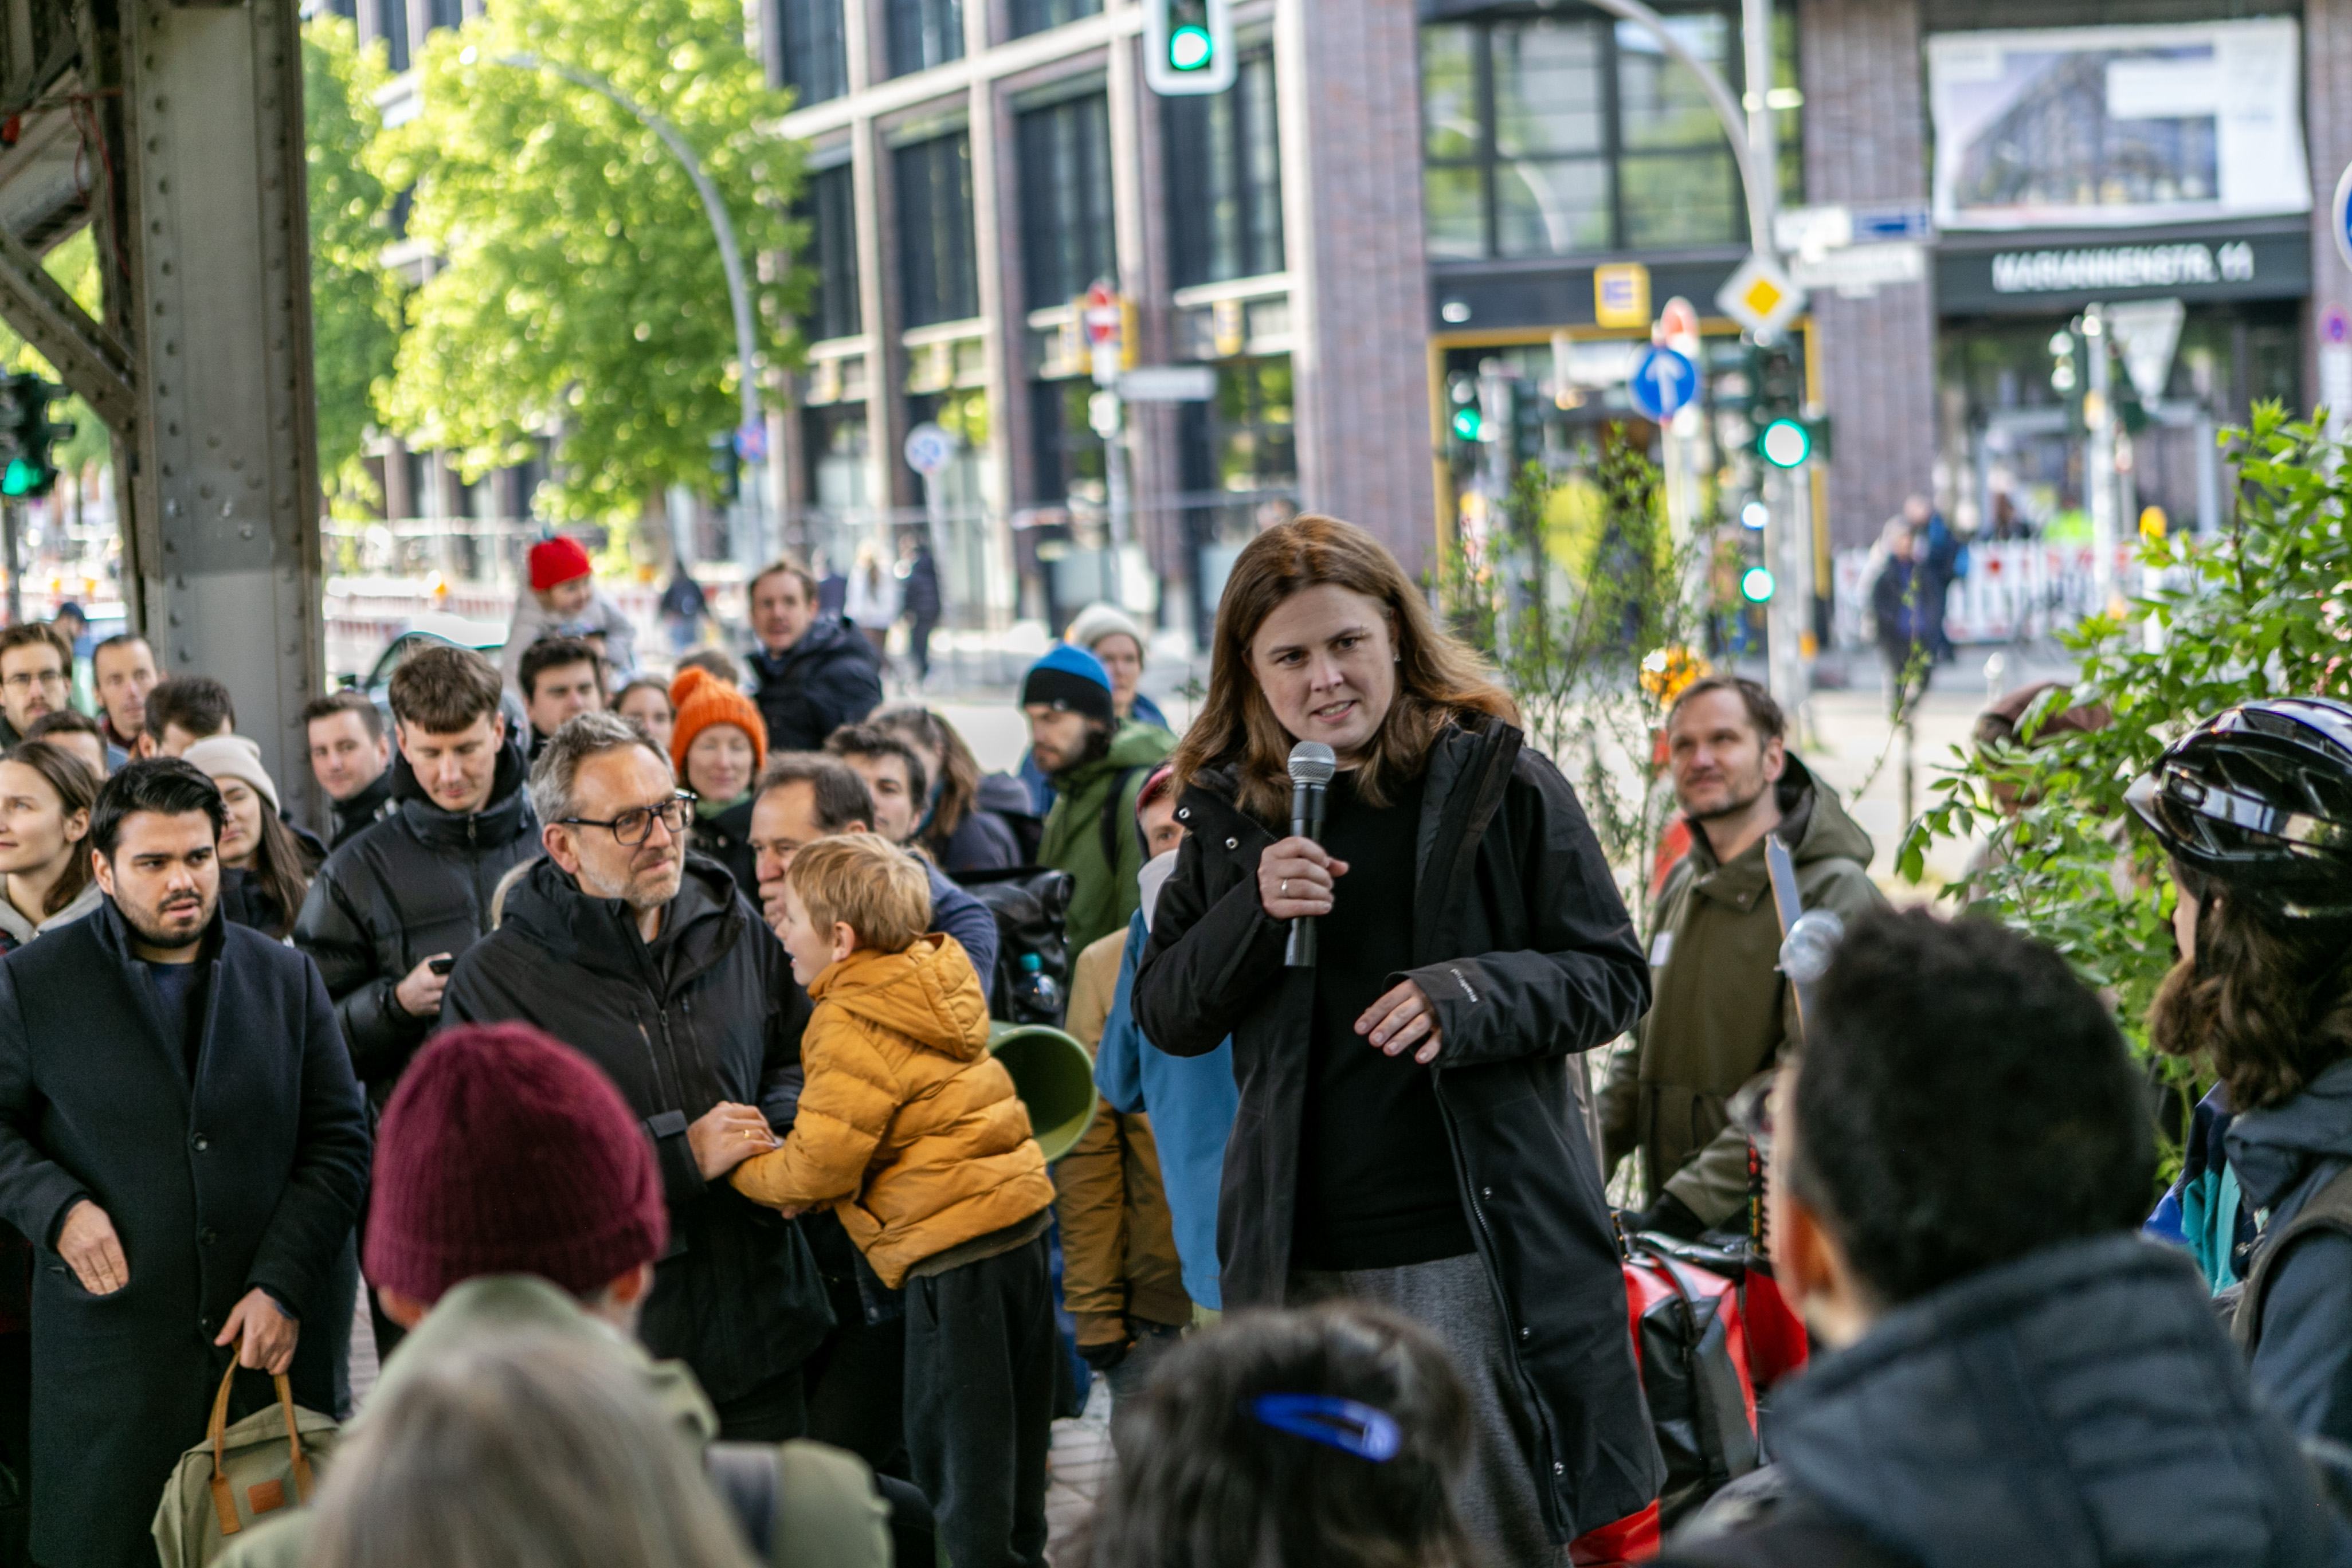 die Bezirksbürgermeisterin von Friedrichshain-Kreuzberg ritet Grußworte an zahlreiche Menschen